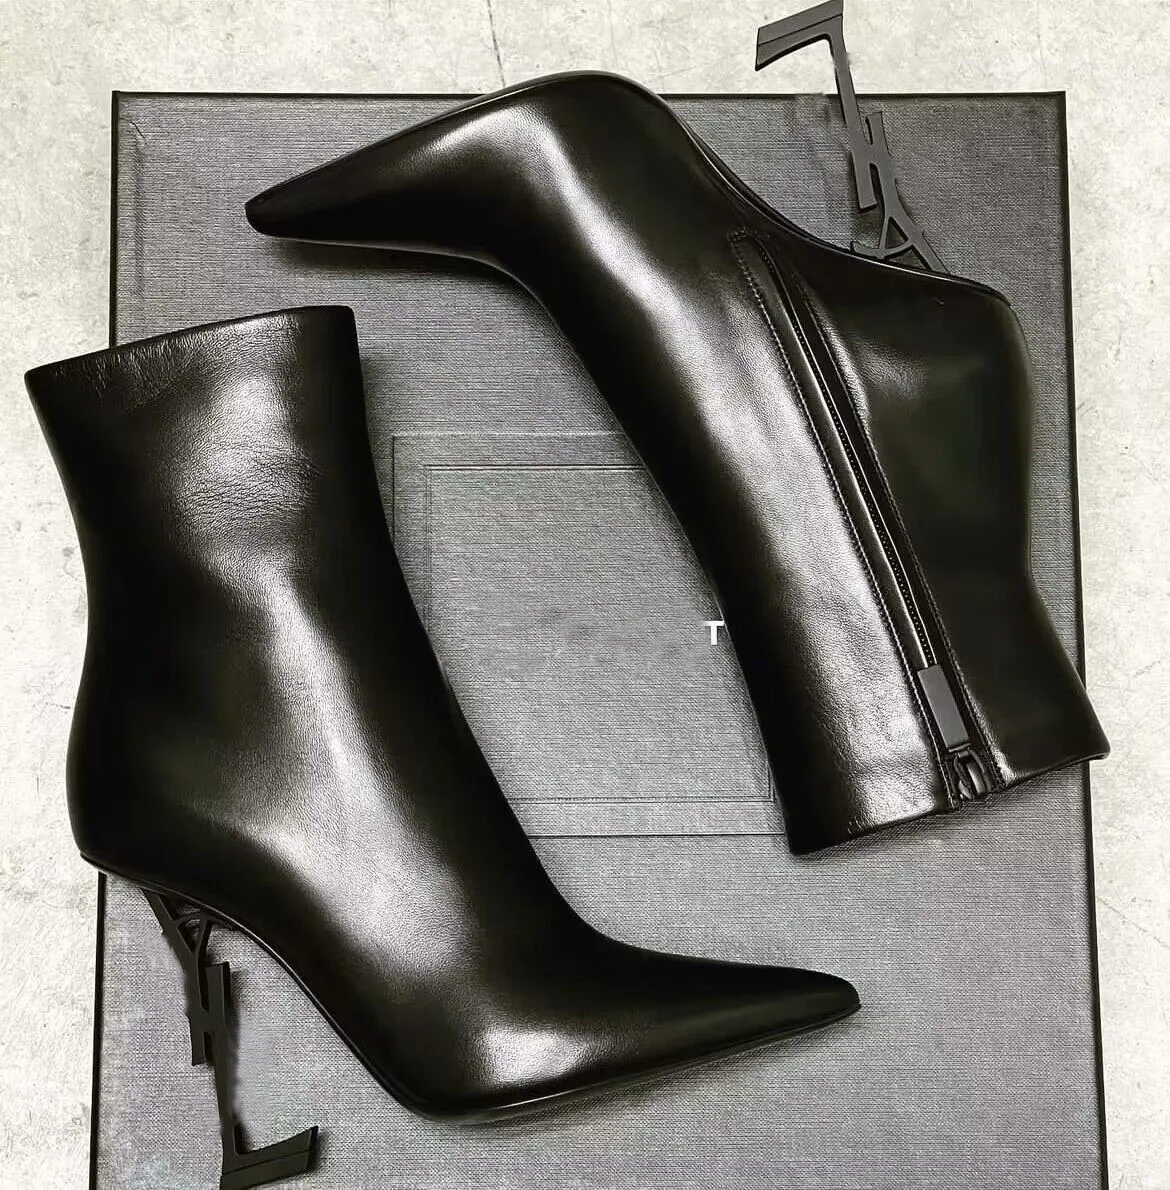 Роскошные зимние брендовые ботильоны Opyum, женские металлические туфли на шпильке, черно-белые ботинки из телячьей кожи, вечерние свадебные женские ботильоны EU35-43 с коробкой